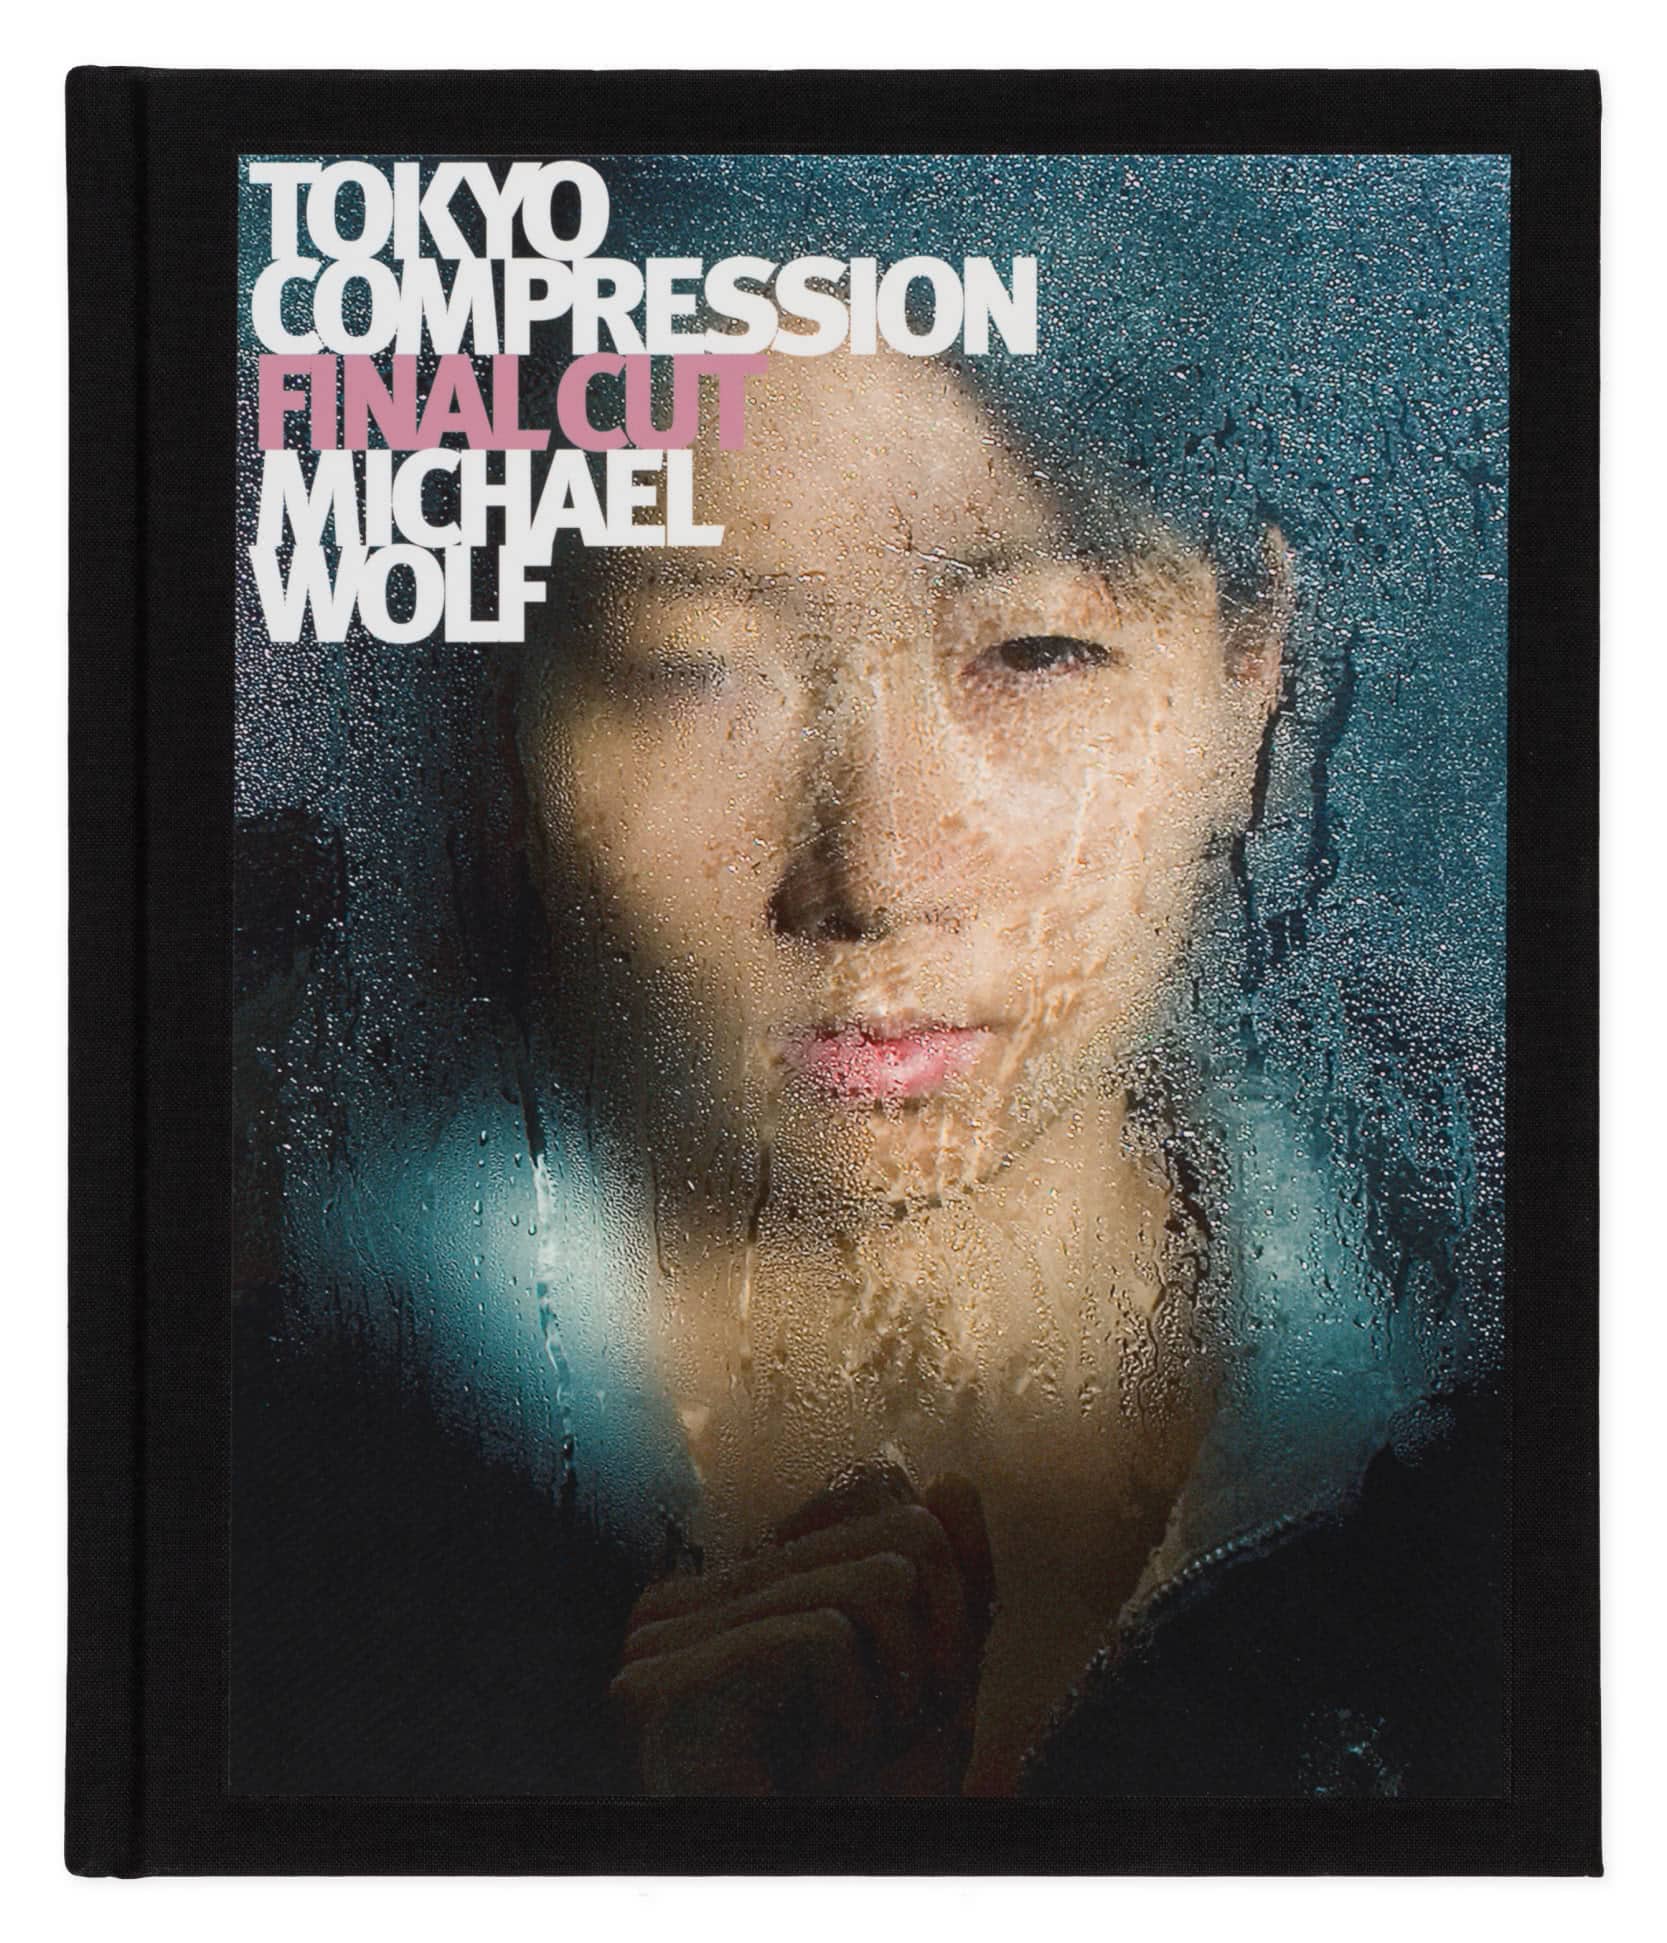 Tokyo Compression Final Cut - Robert Koch Gallery - Michael Wolf